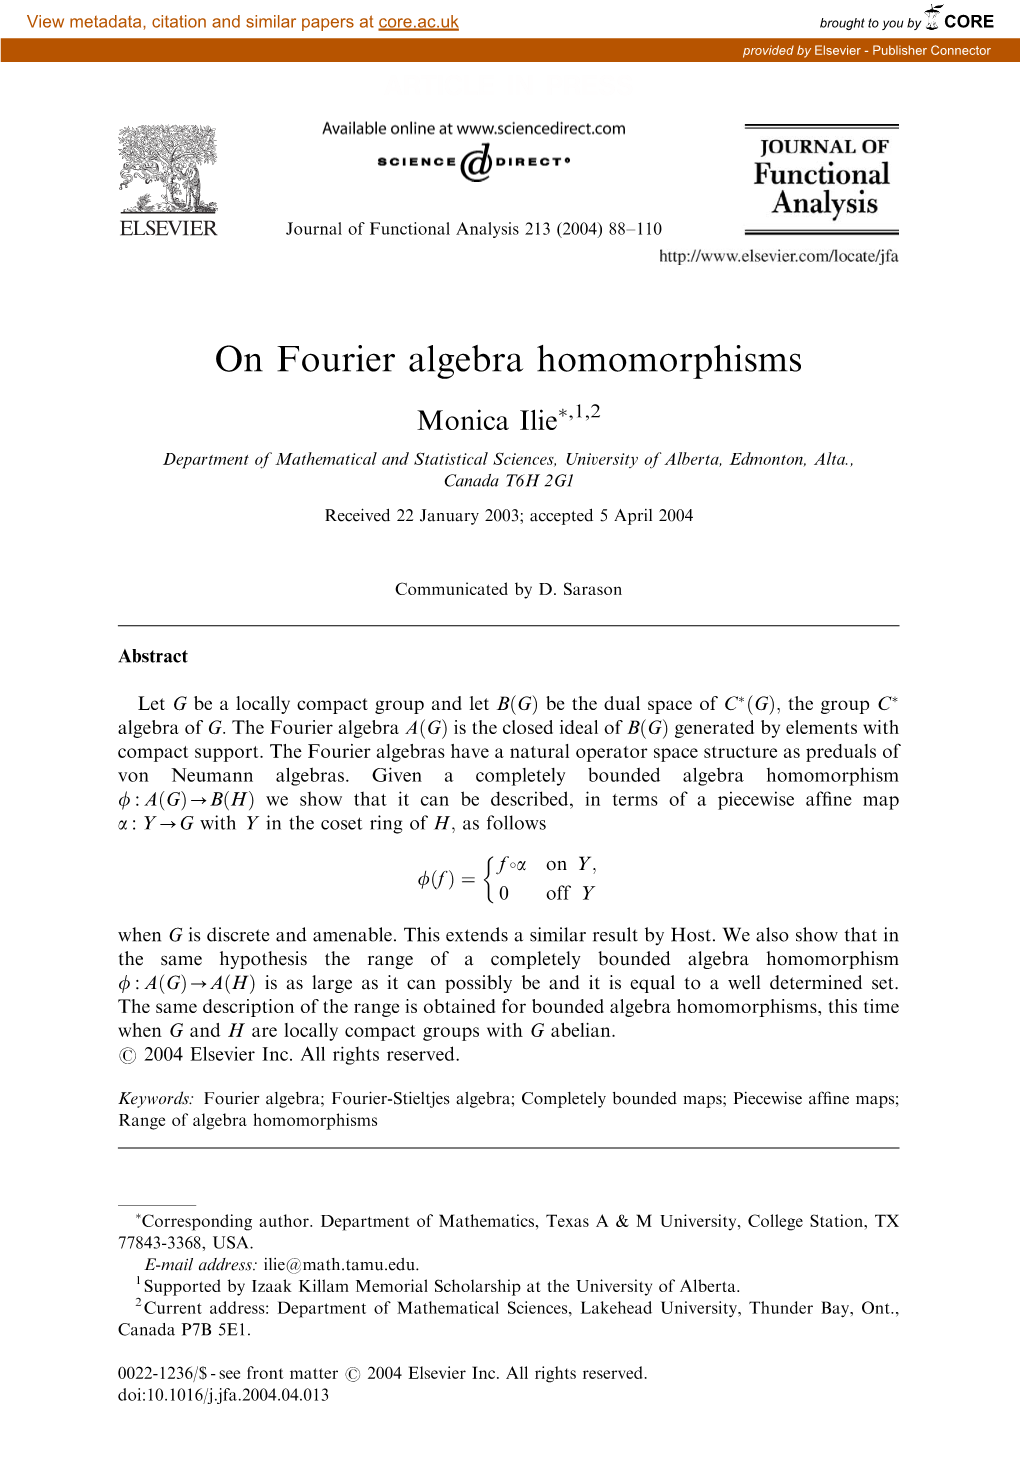 On Fourier Algebra Homomorphisms